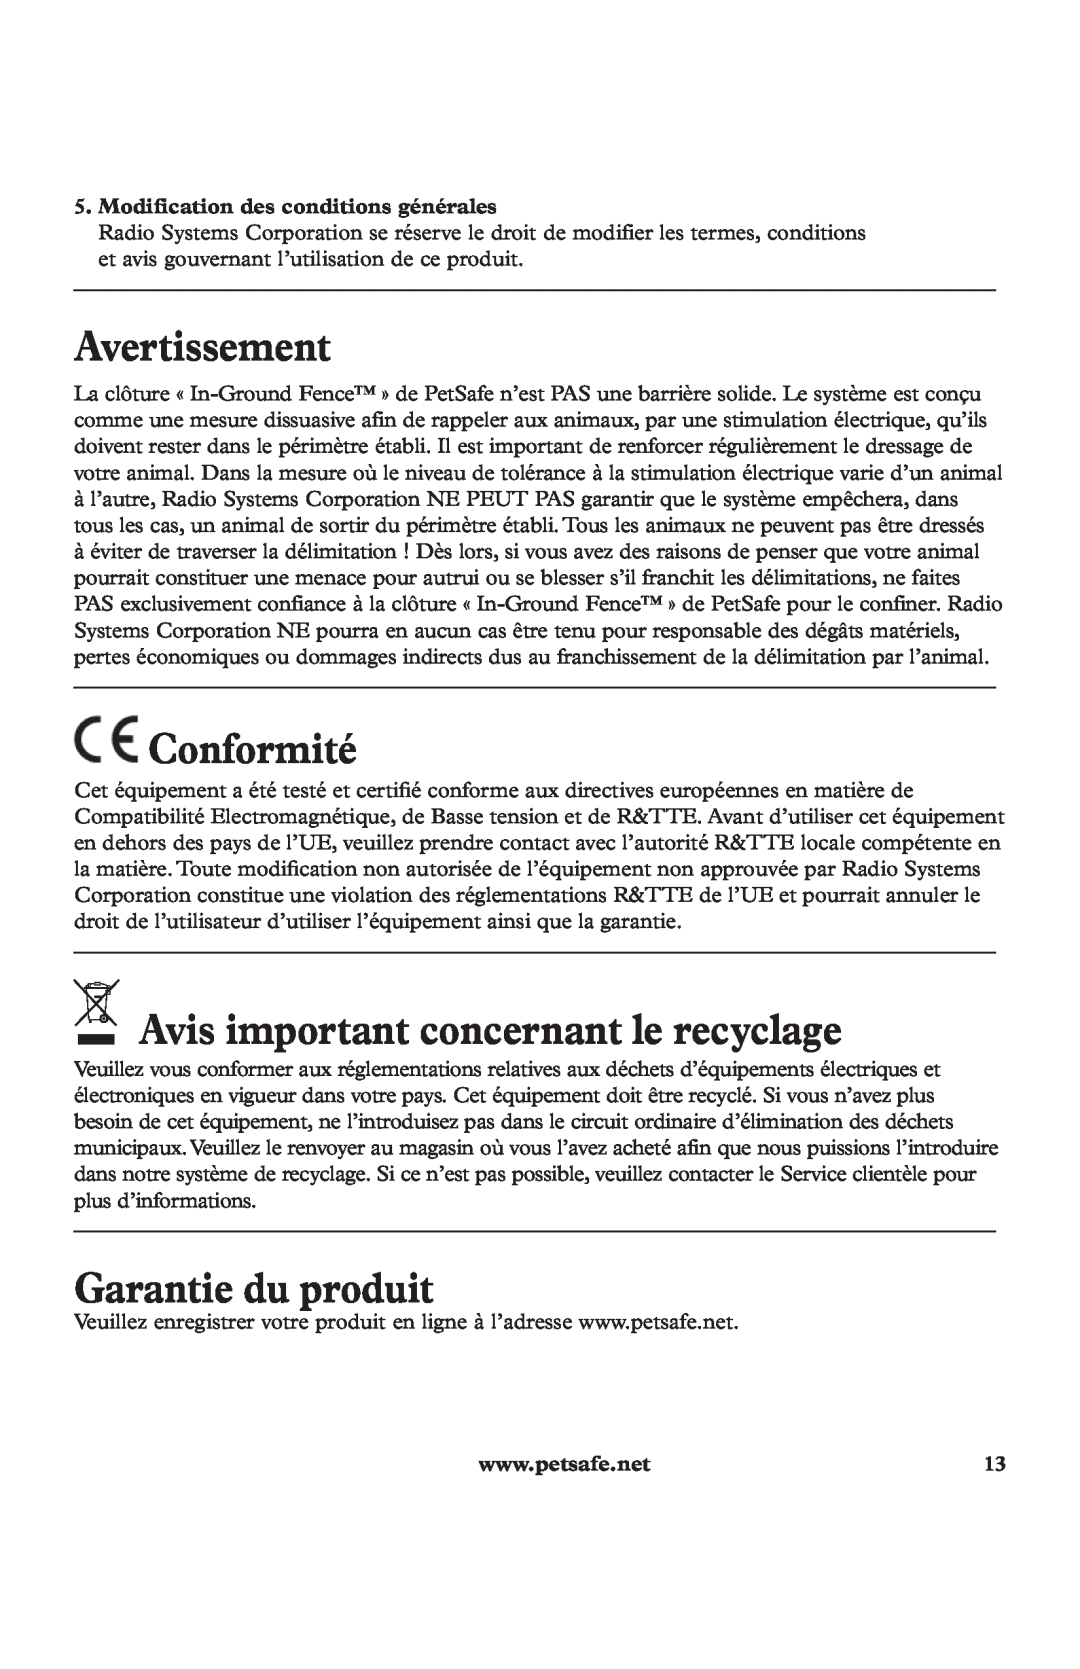 Petsafe In-Ground Fence Kit Avertissement, Conformité, Avis important concernant le recyclage, Garantie du produit 